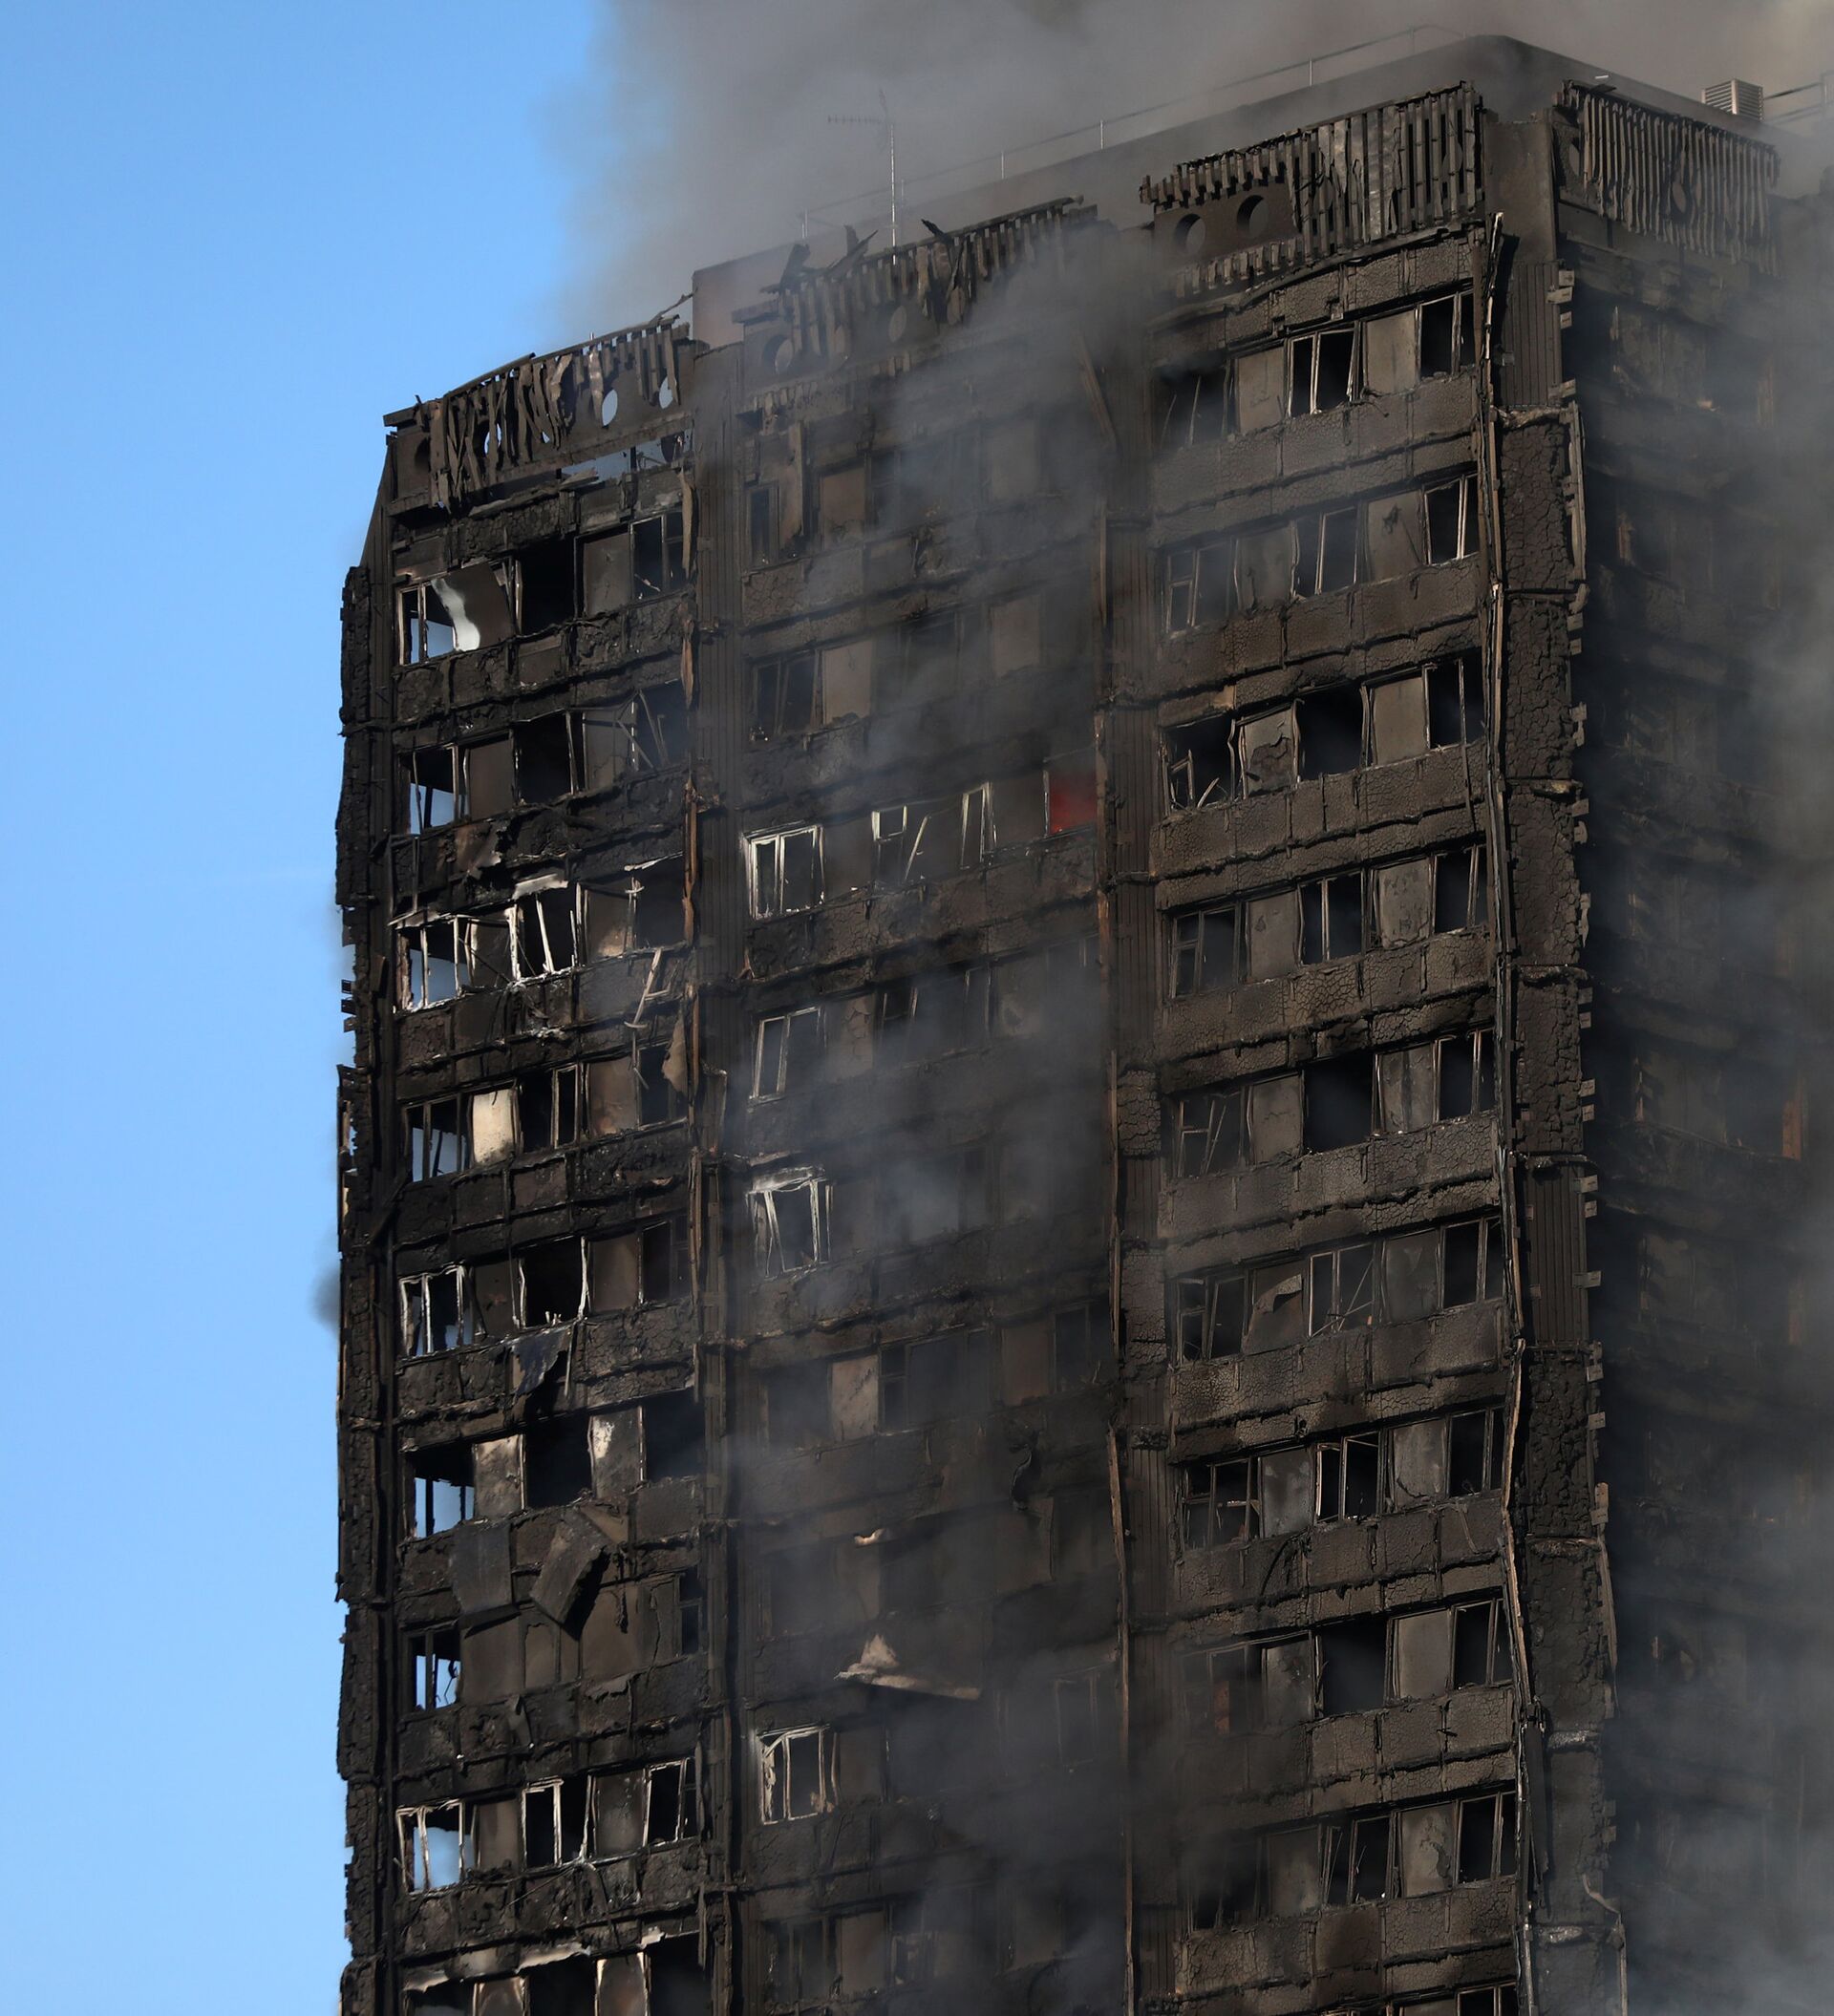 Гренфелл Тауэр пожар. Пожар в здании Grenfell Tower в Лондоне. Пожар в Лондоне 14 июня 2017. Горящий многоэтажный дом. Сгорела многоэтажка